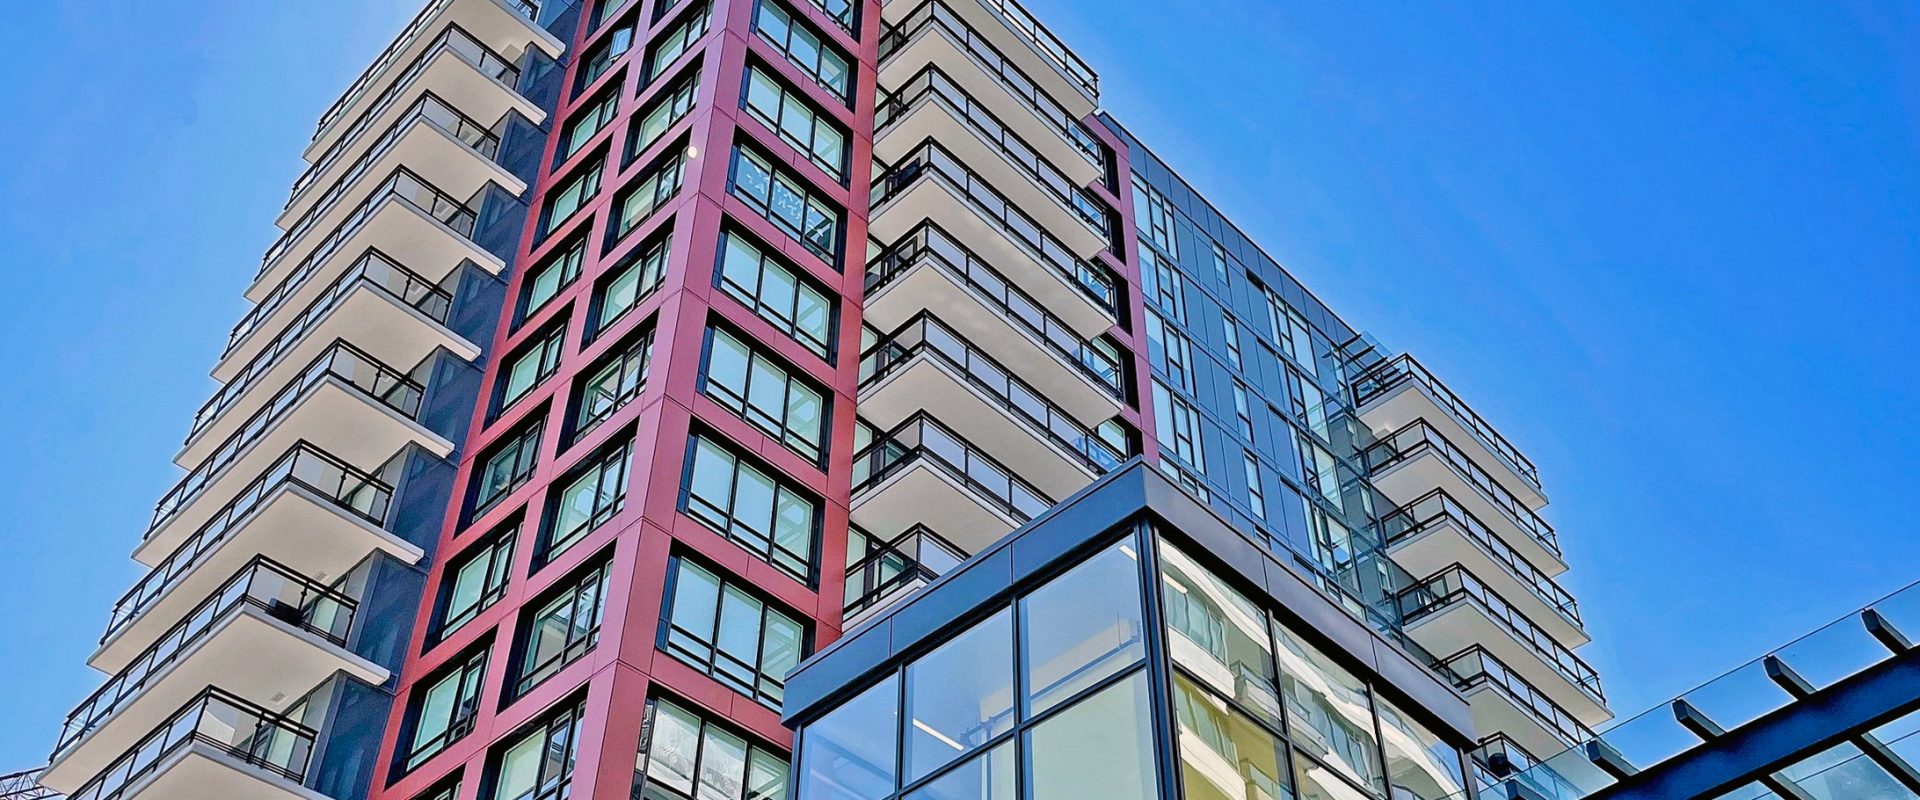 【列治文】Viewstar全新建成高级公寓, 绝佳城景